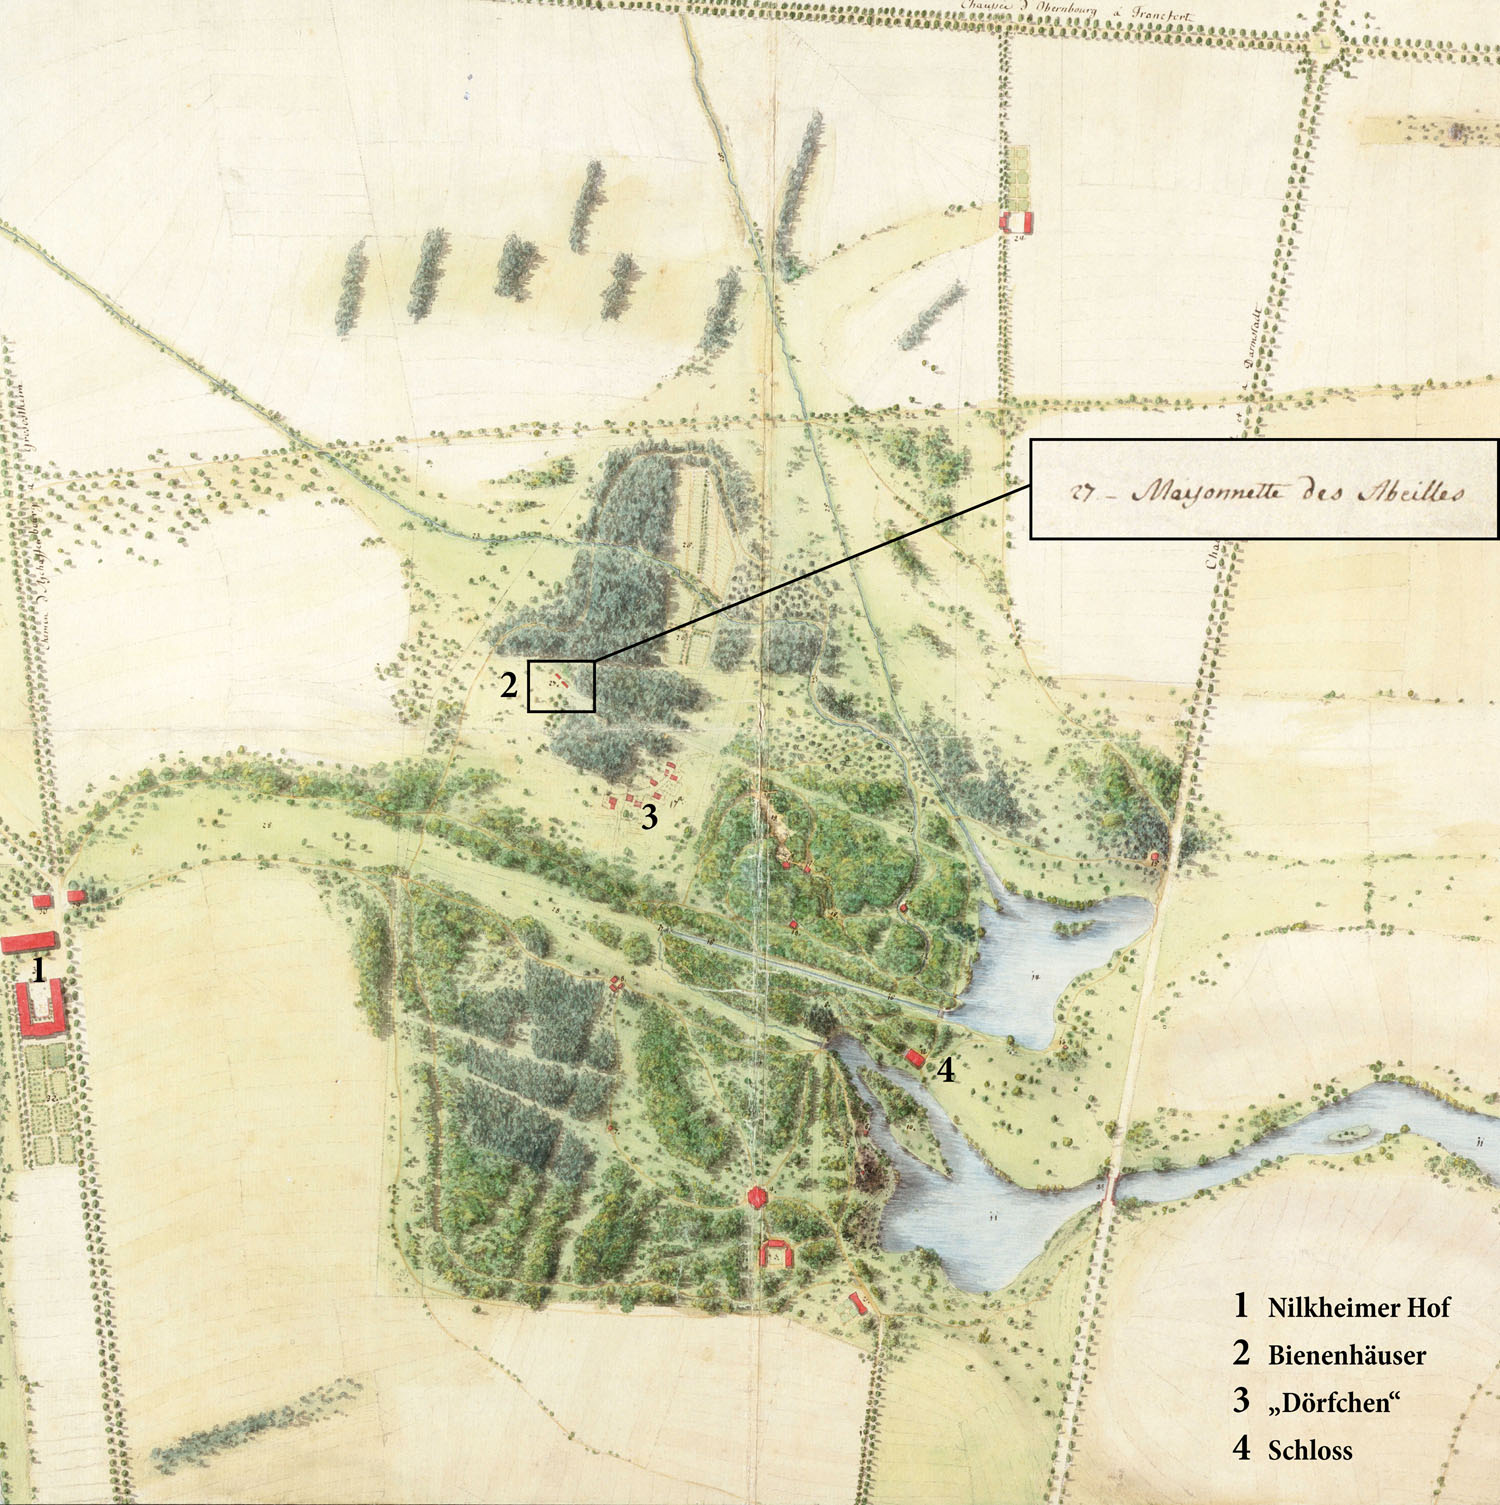 Emanuel Joseph von Herigoyen, Gartenplan des Parks Schönbusch vor 1788 mit Standort der Bienenhäuser und zugehöriger Erläuterung aus der Planlegende, BSV, Gärtenabteilung: AB 03-05-002 (B 11-2)